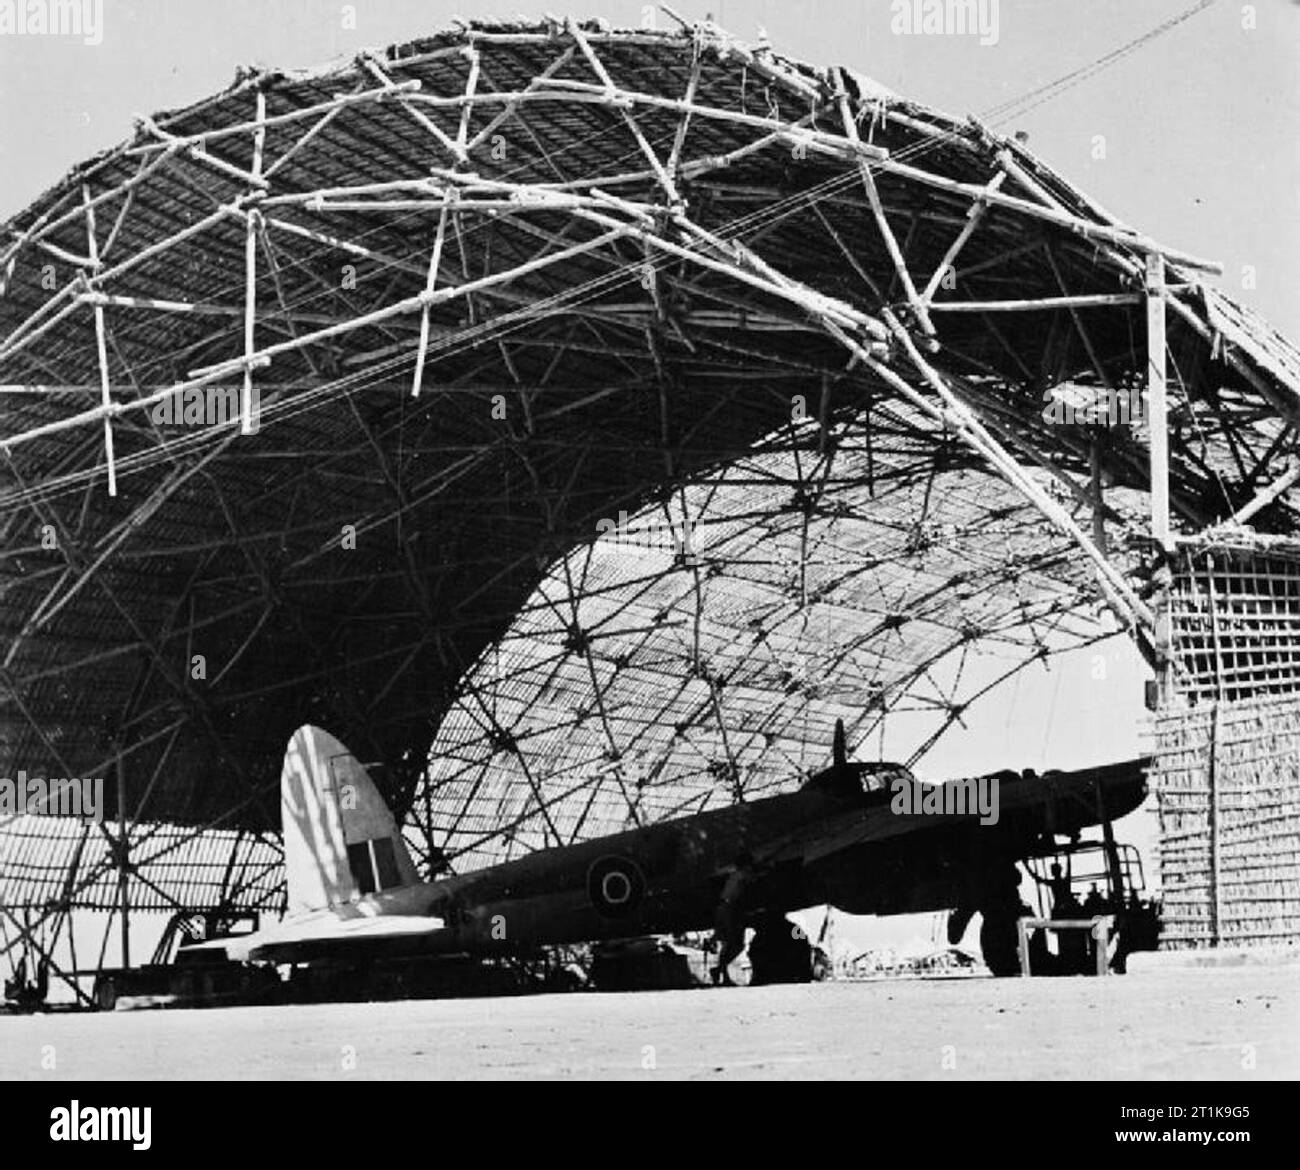 Royal Air Force im Nahen Osten, 1944-1945. Eine De Havilland Mosquito liegt geschützt in einem Hangar aus 'Barusti' (binsen und Zweige in eine offene Arbeit Muster gewebt) an Nr. 44 Staging Post, Sharjah, Trucial Staaten, während in den Fernen Osten Theater übergesetzt werden. Stockfoto